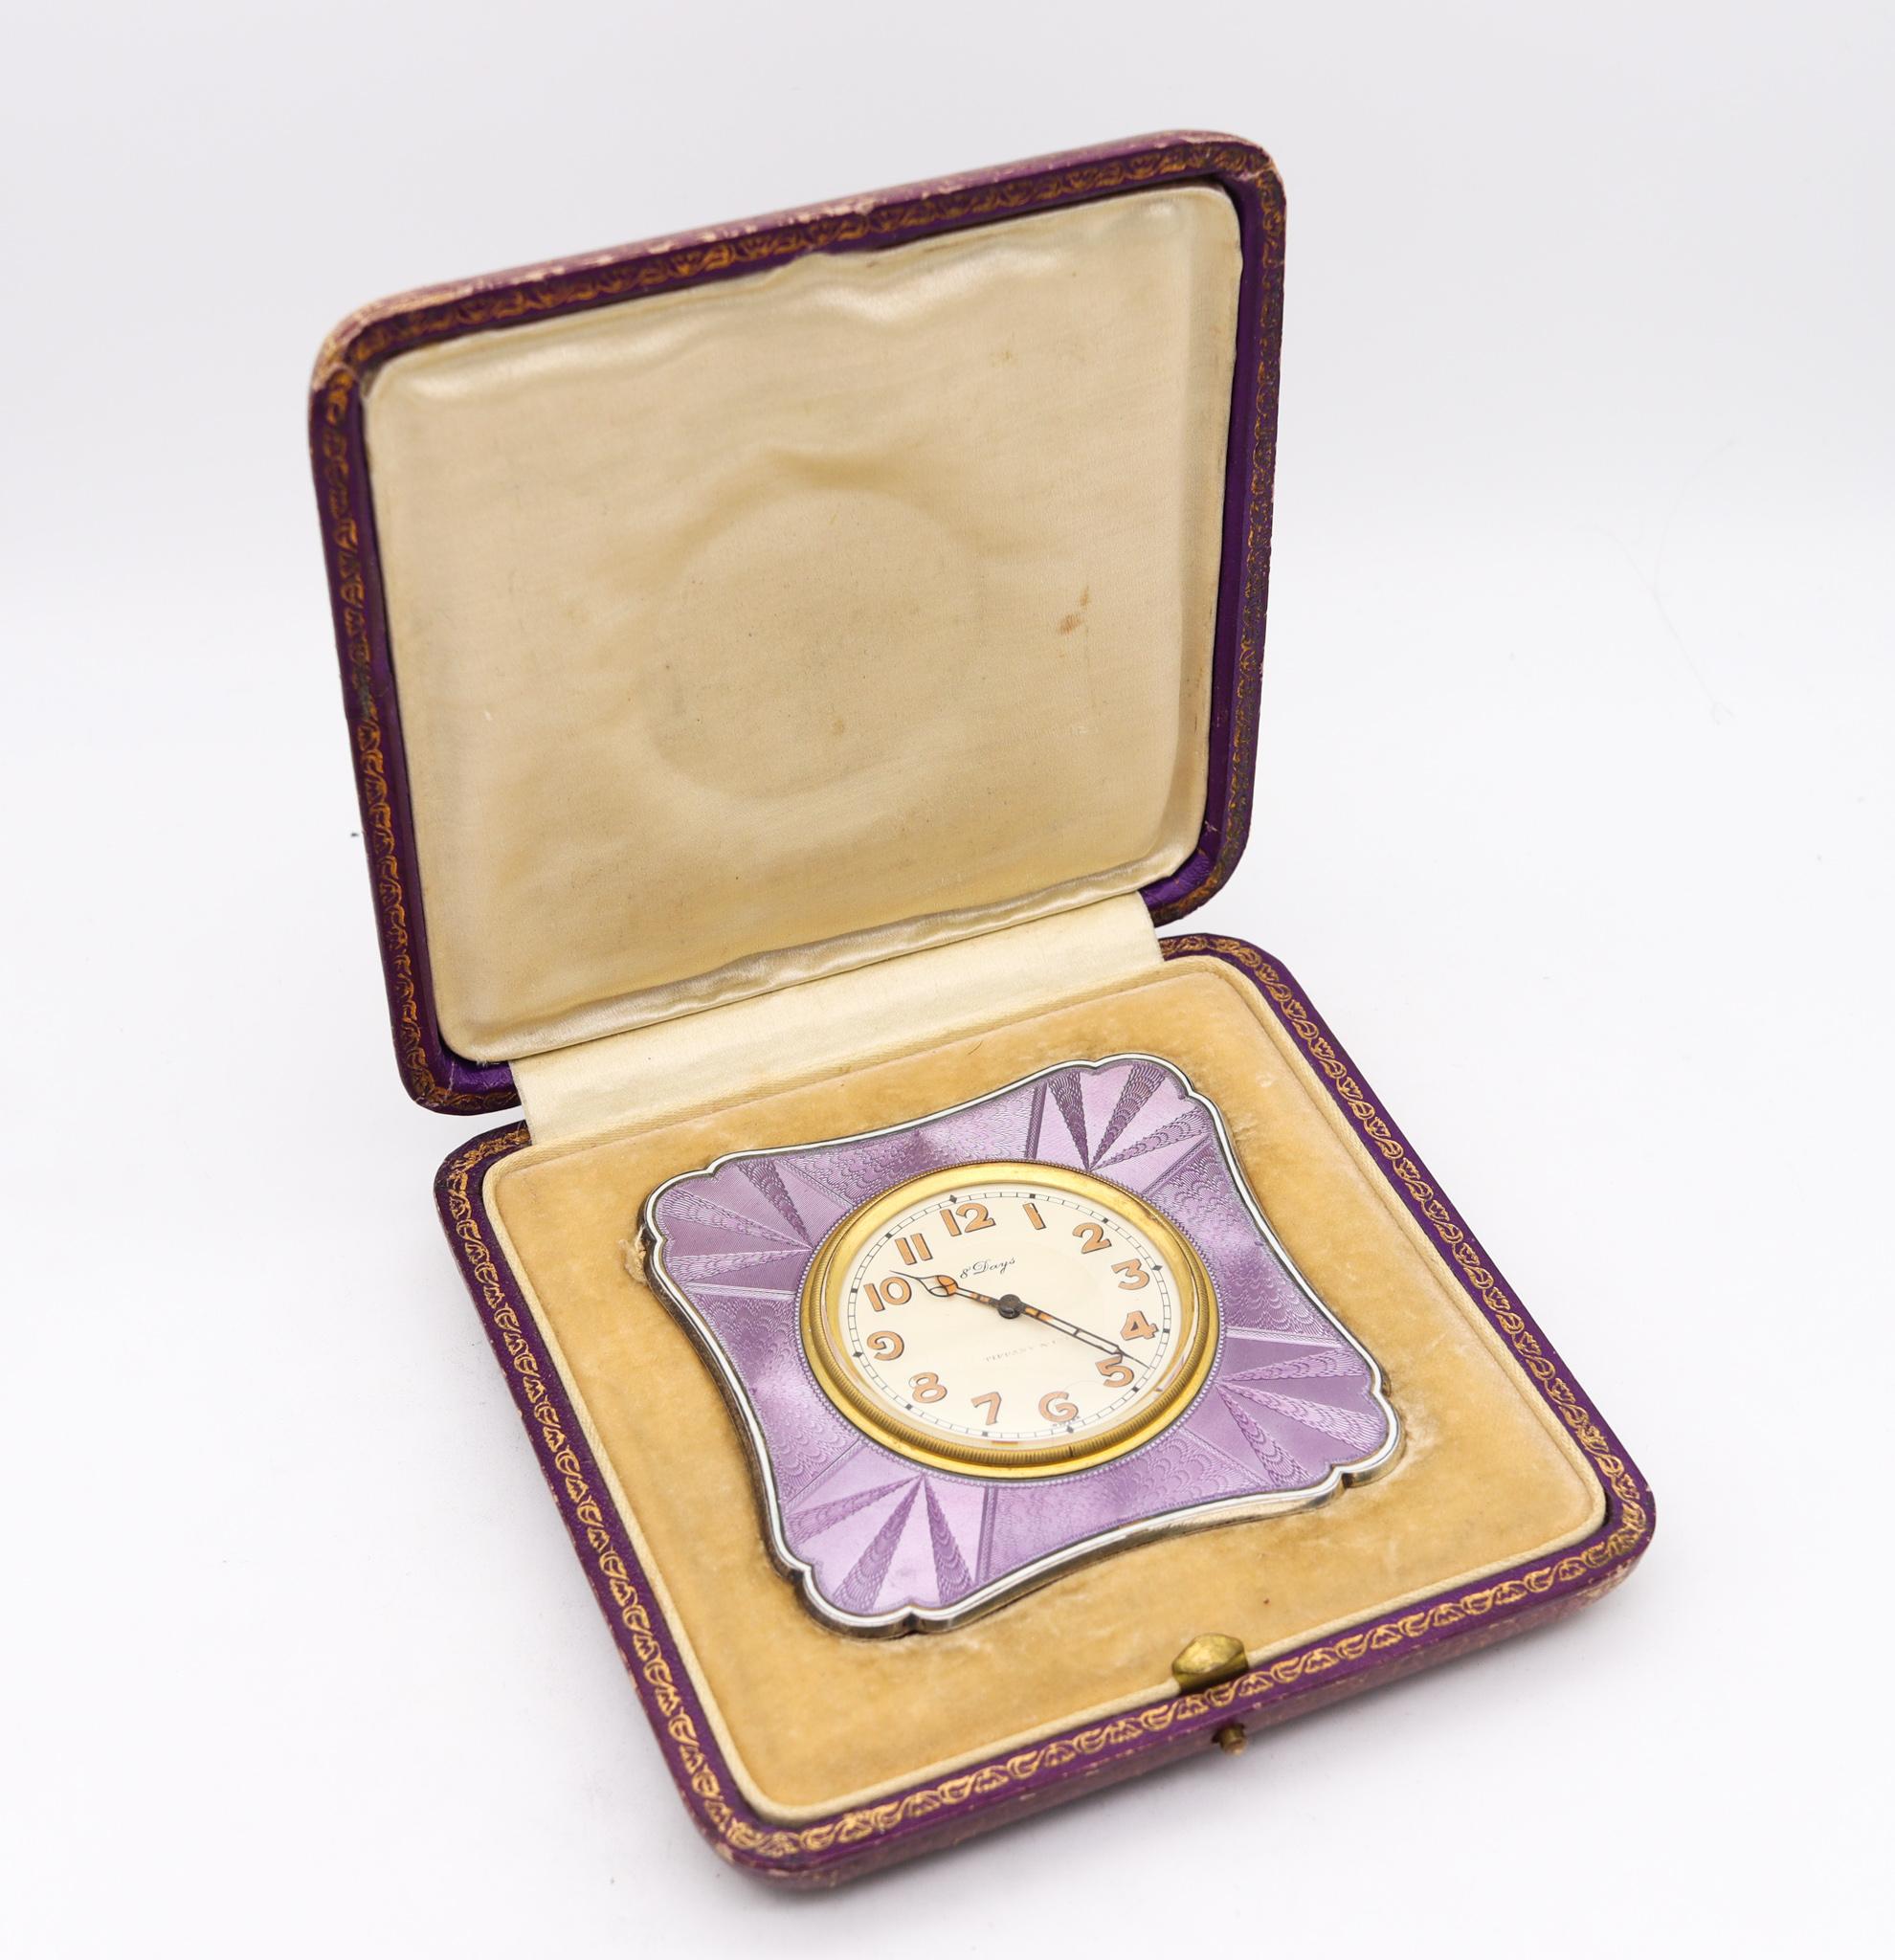 Une horloge de bureau conçue par Tiffany & Co.

Une belle et élégante horloge de bureau à dos de chevalet, créée à New York par les studios Tiffany &New, au cours de la période Art déco, au début des années 1920. Cette pièce rare a été conçue dans